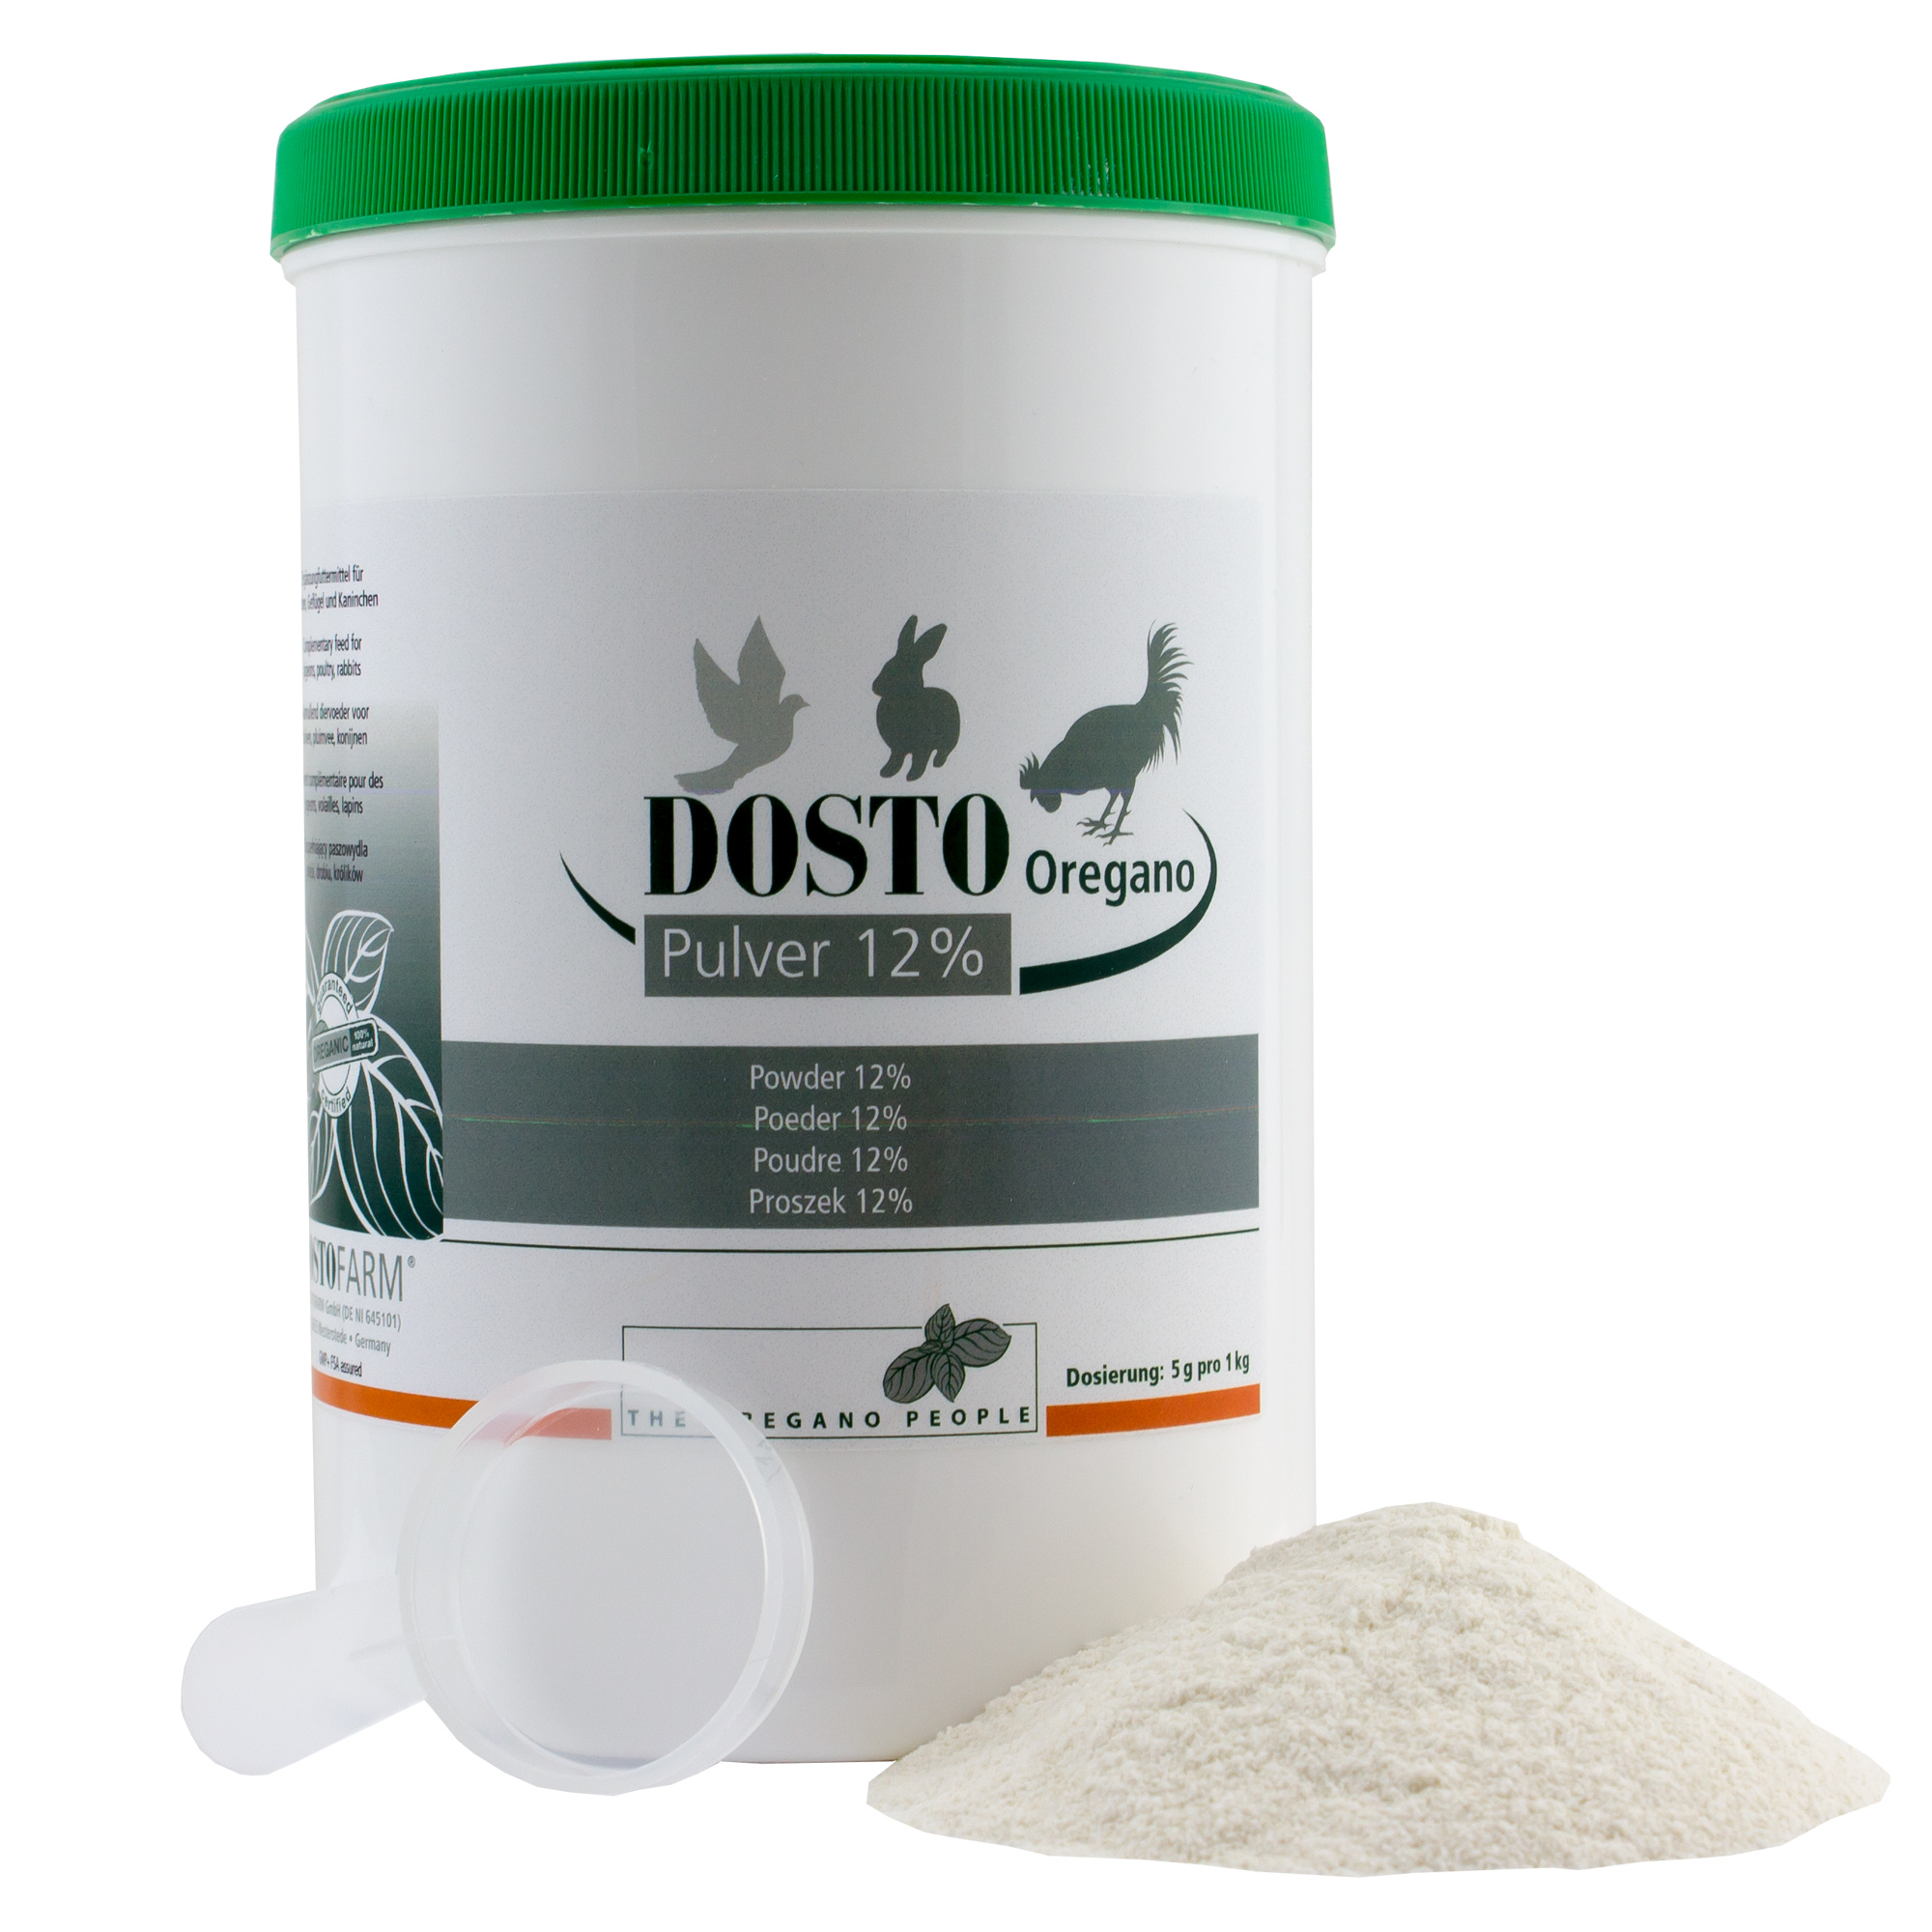 dosto-oregano-powder-12-500g